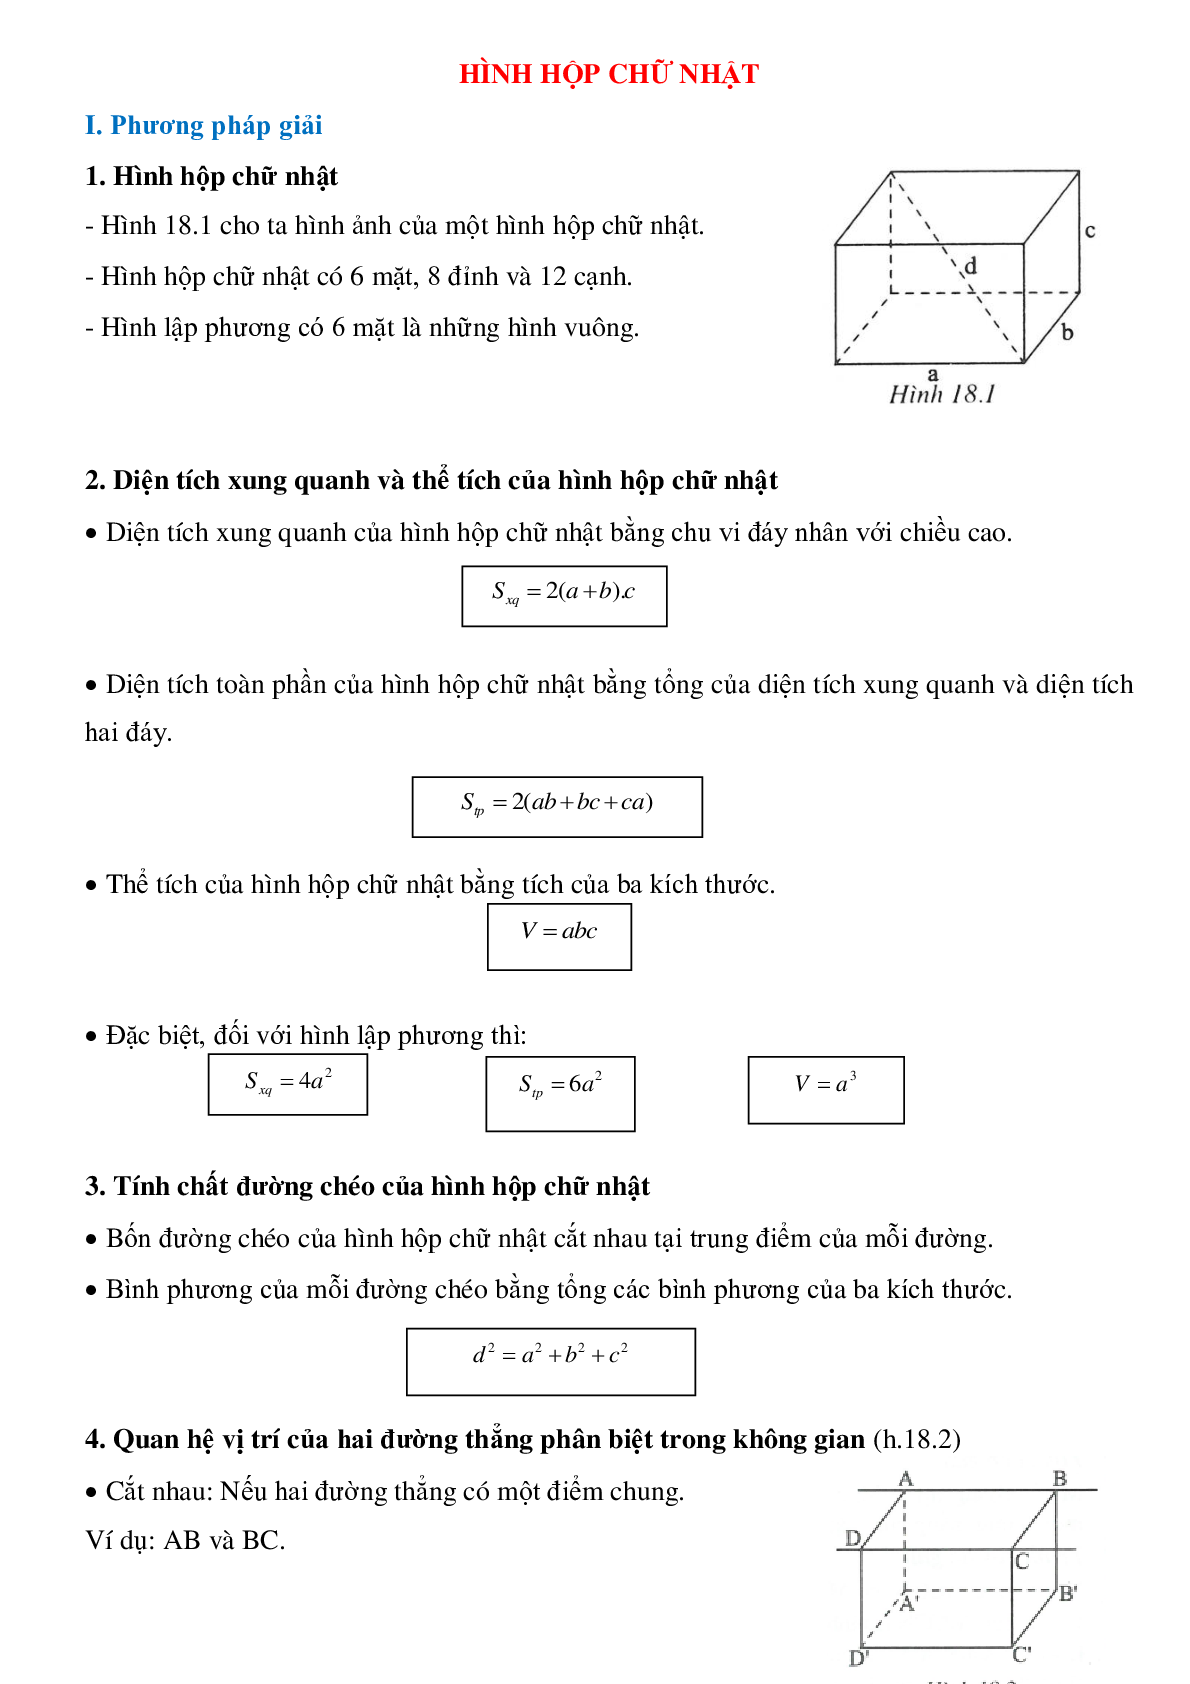 Hình hộp chữ nhật - Hình học toán 8 (trang 1)